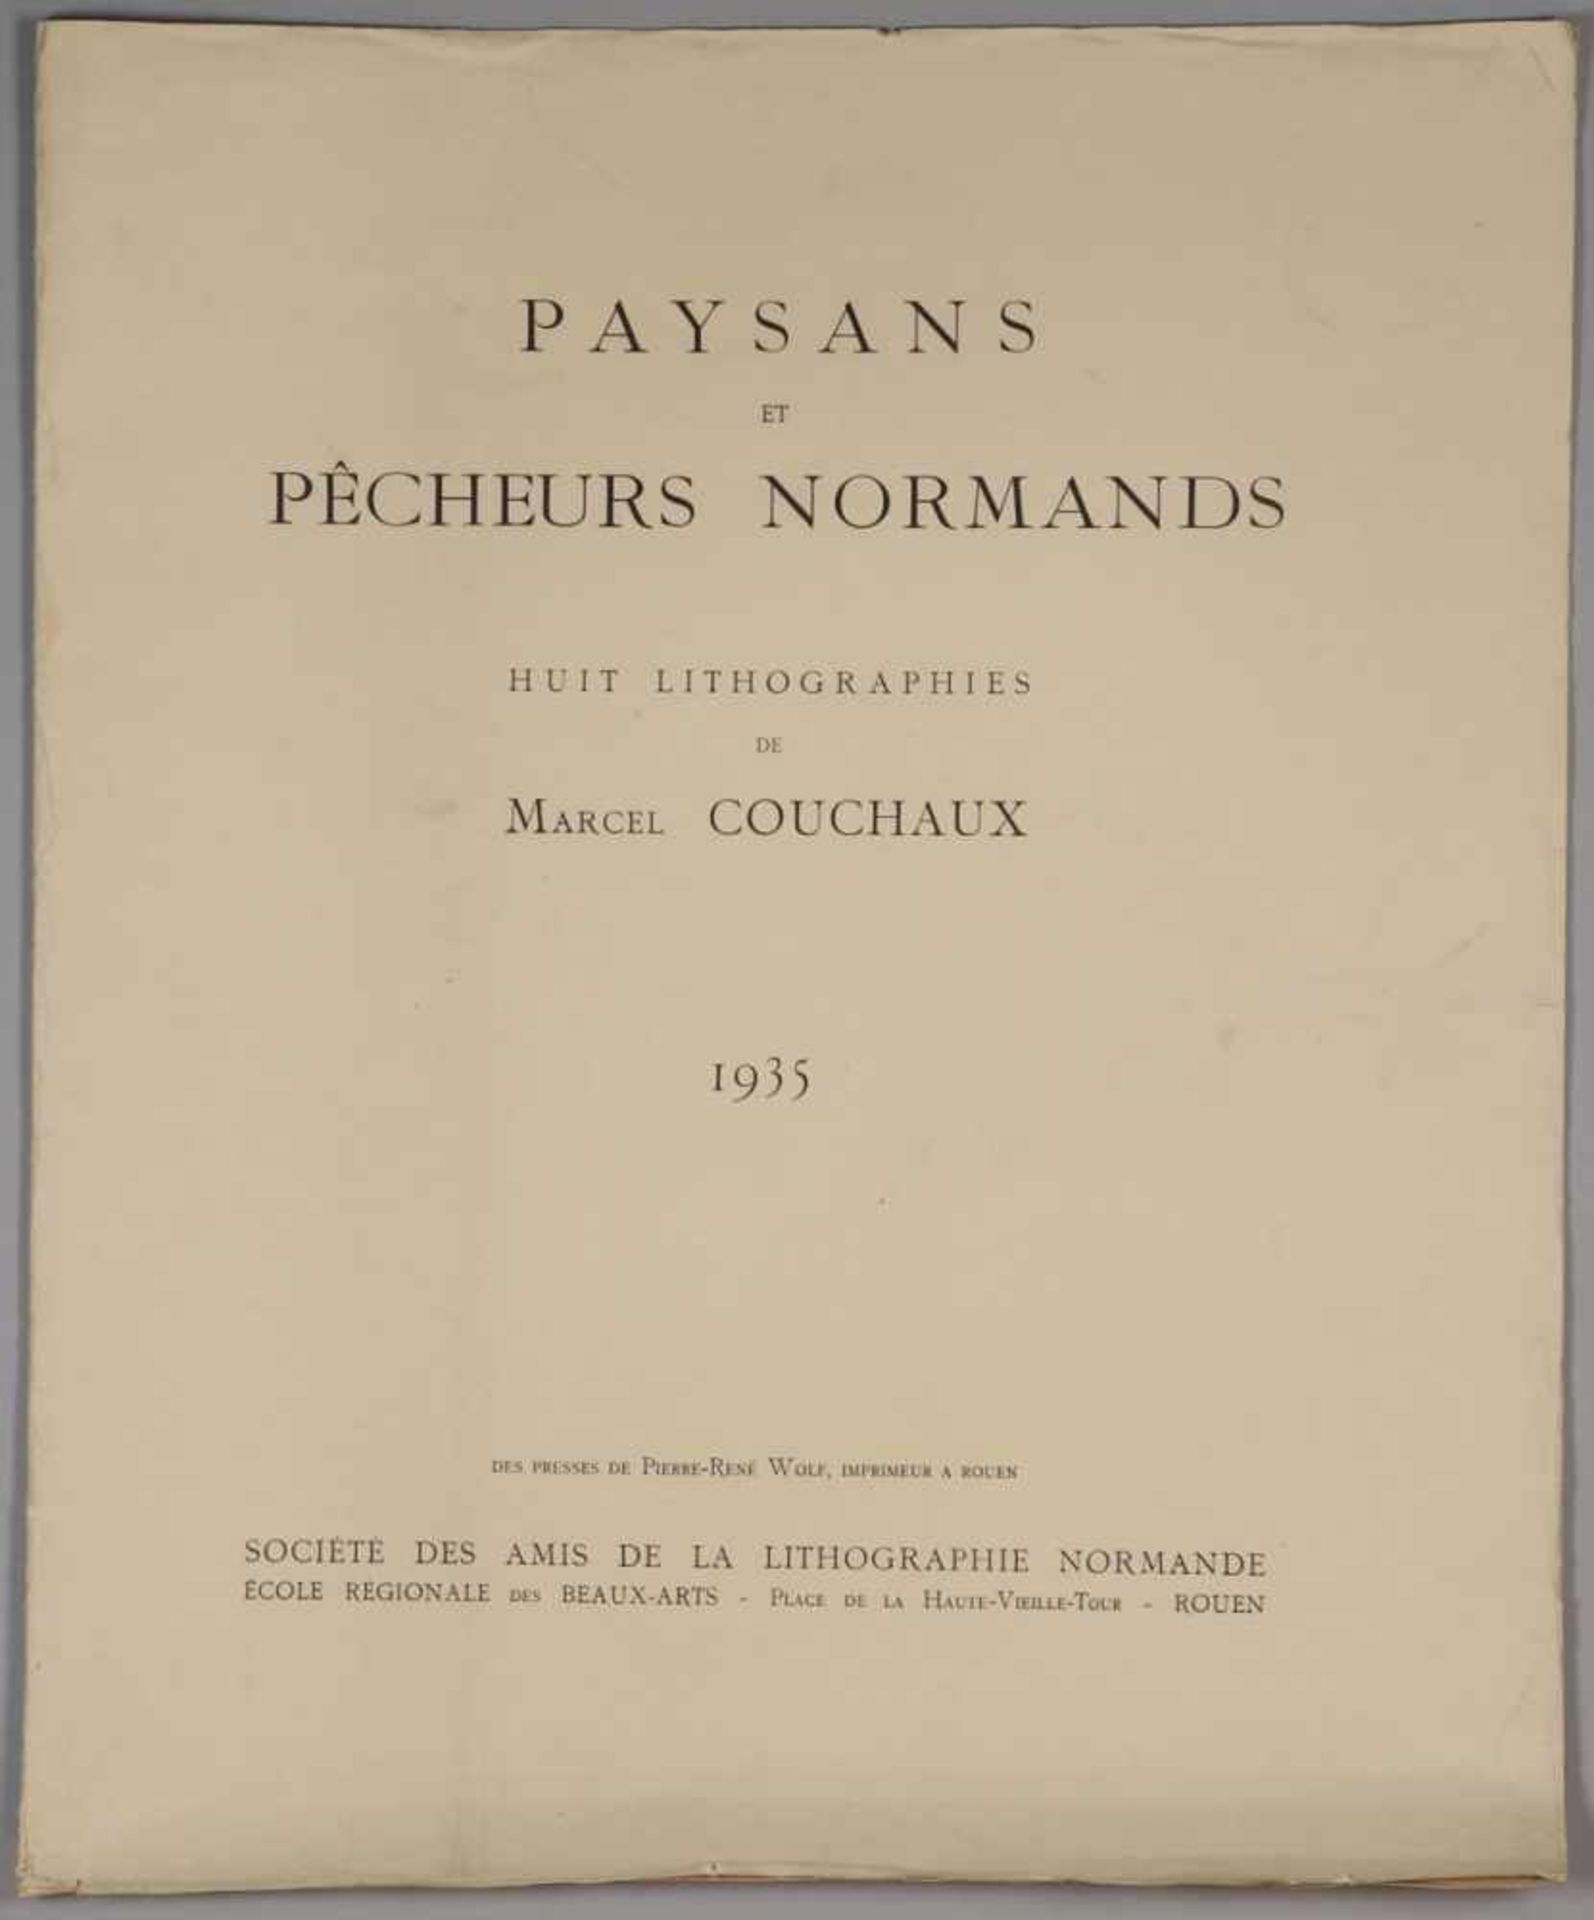 Marcel Couchaux1877 Rouen - 1939 Rouen - "Paysans et pêcheurs normands" (Mappe) - 8 Lithografien/ - Image 9 of 9